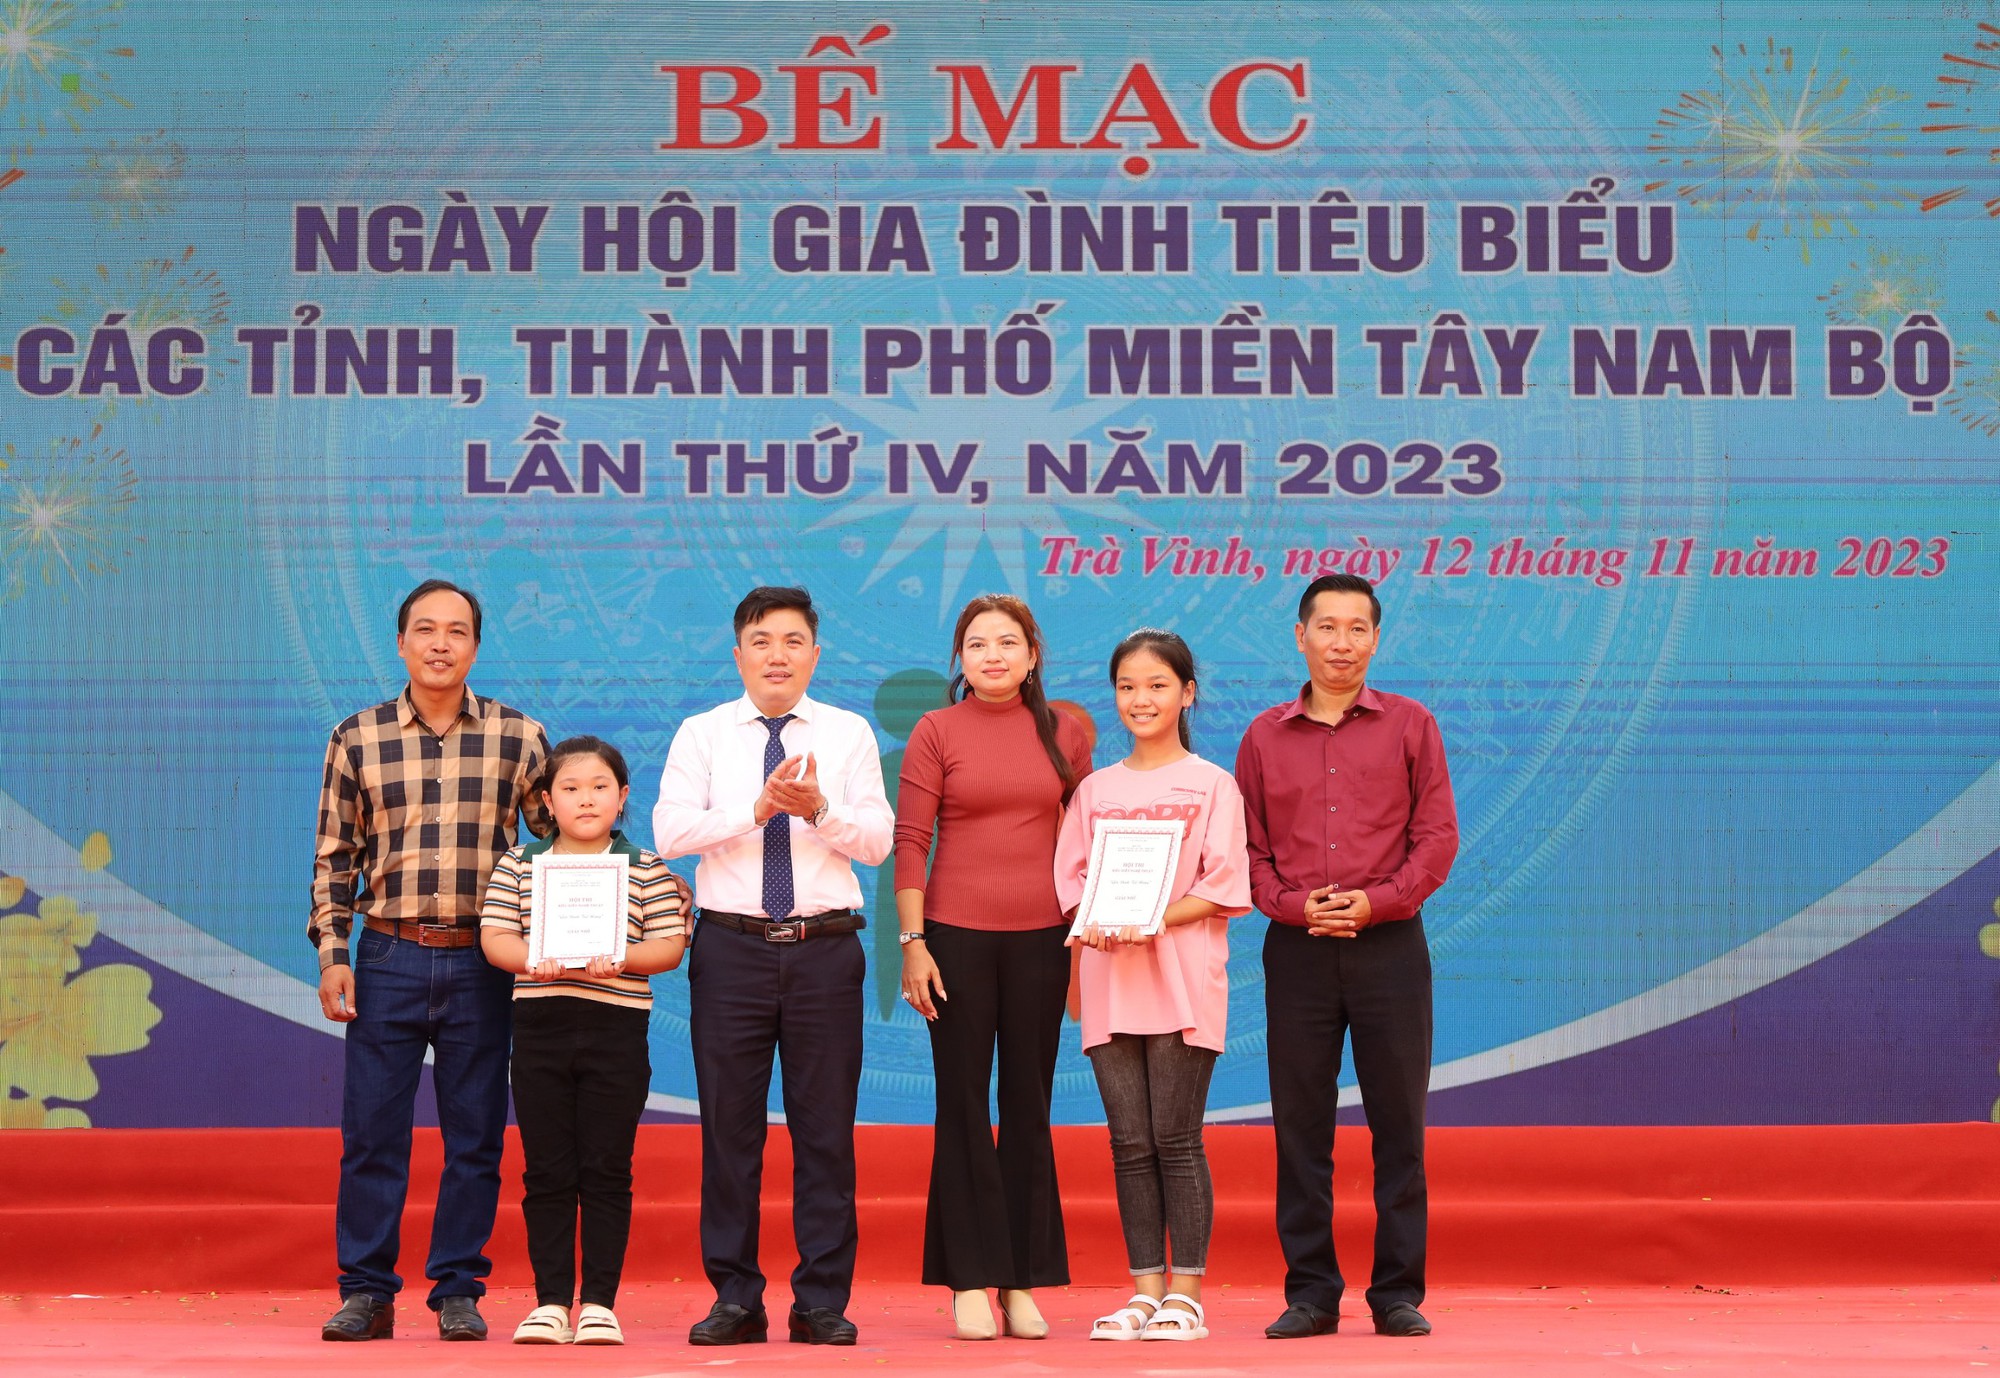 Bế mạc và trao giải Ngày hội Gia đình tiêu biểu miền Tây Nam Bộ - Ảnh 5.